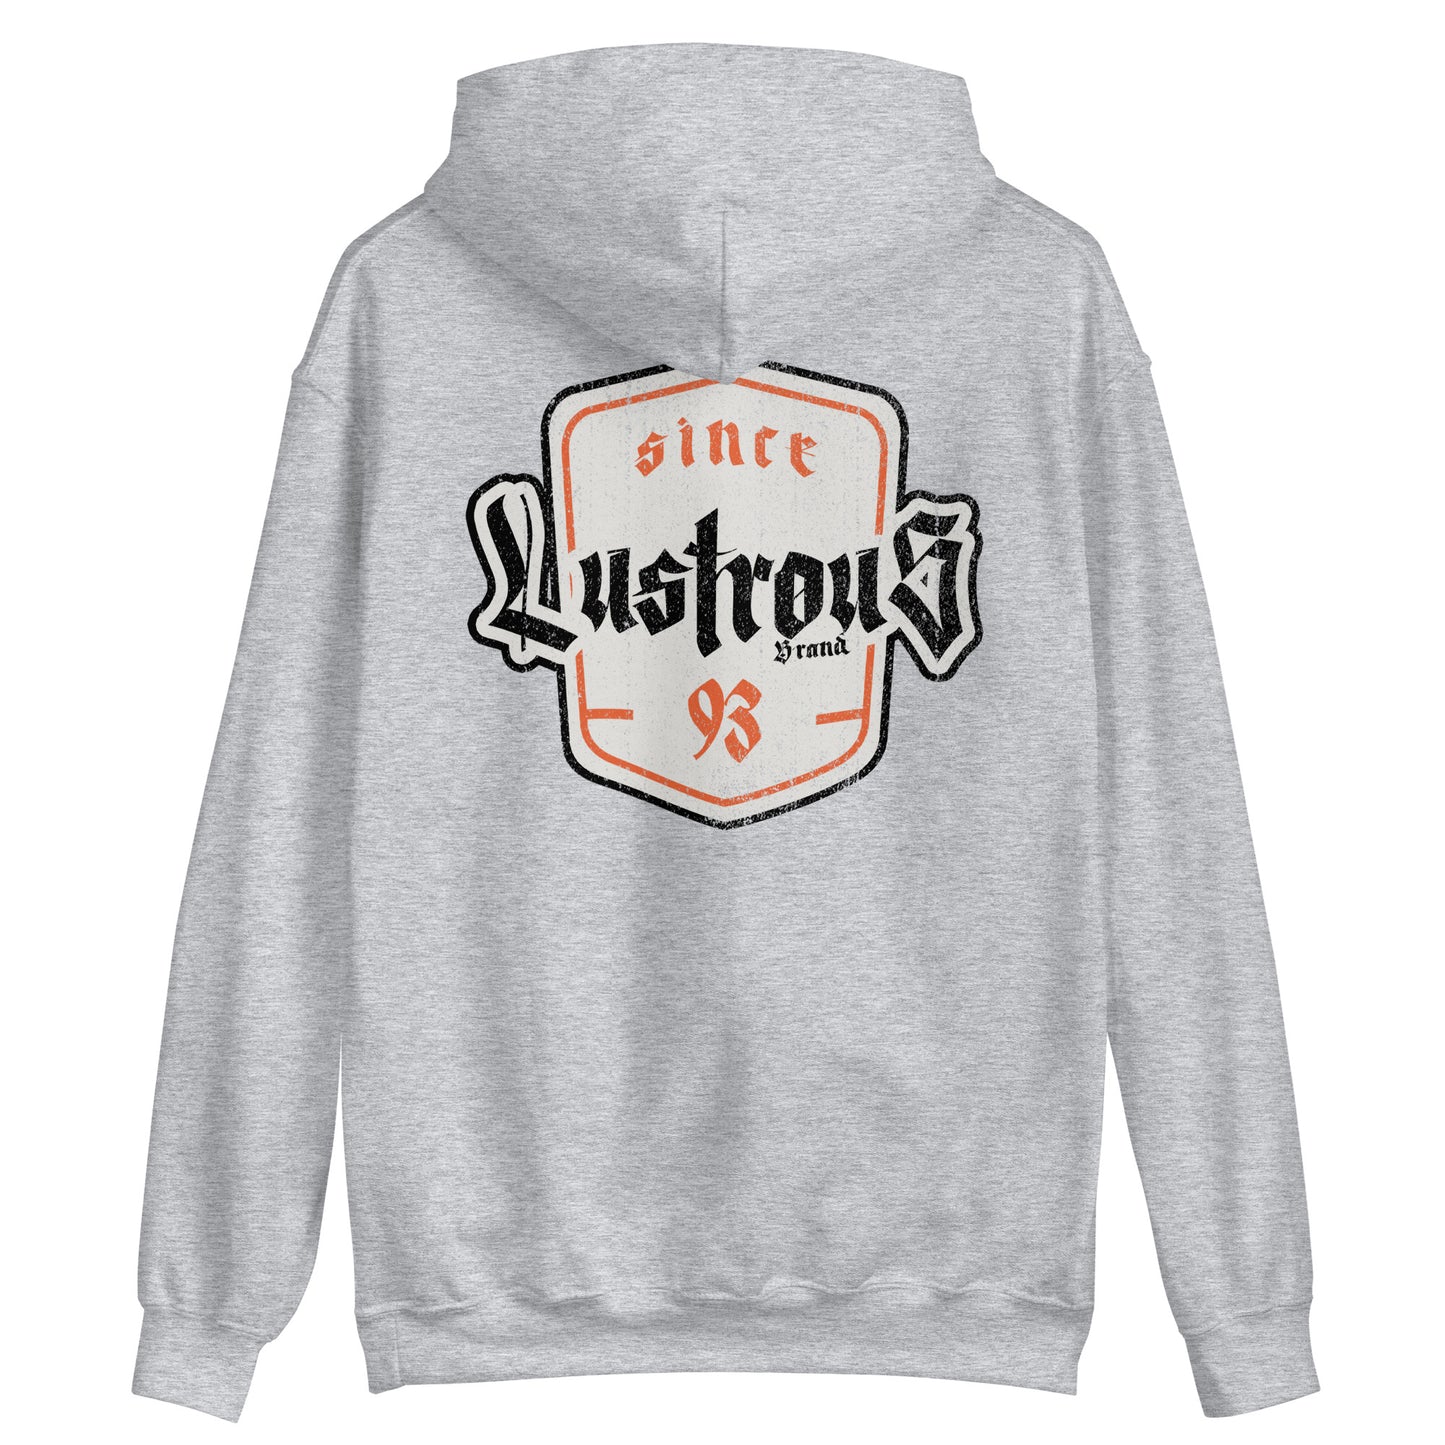 Lustrous Hoodie - 93 - Grey